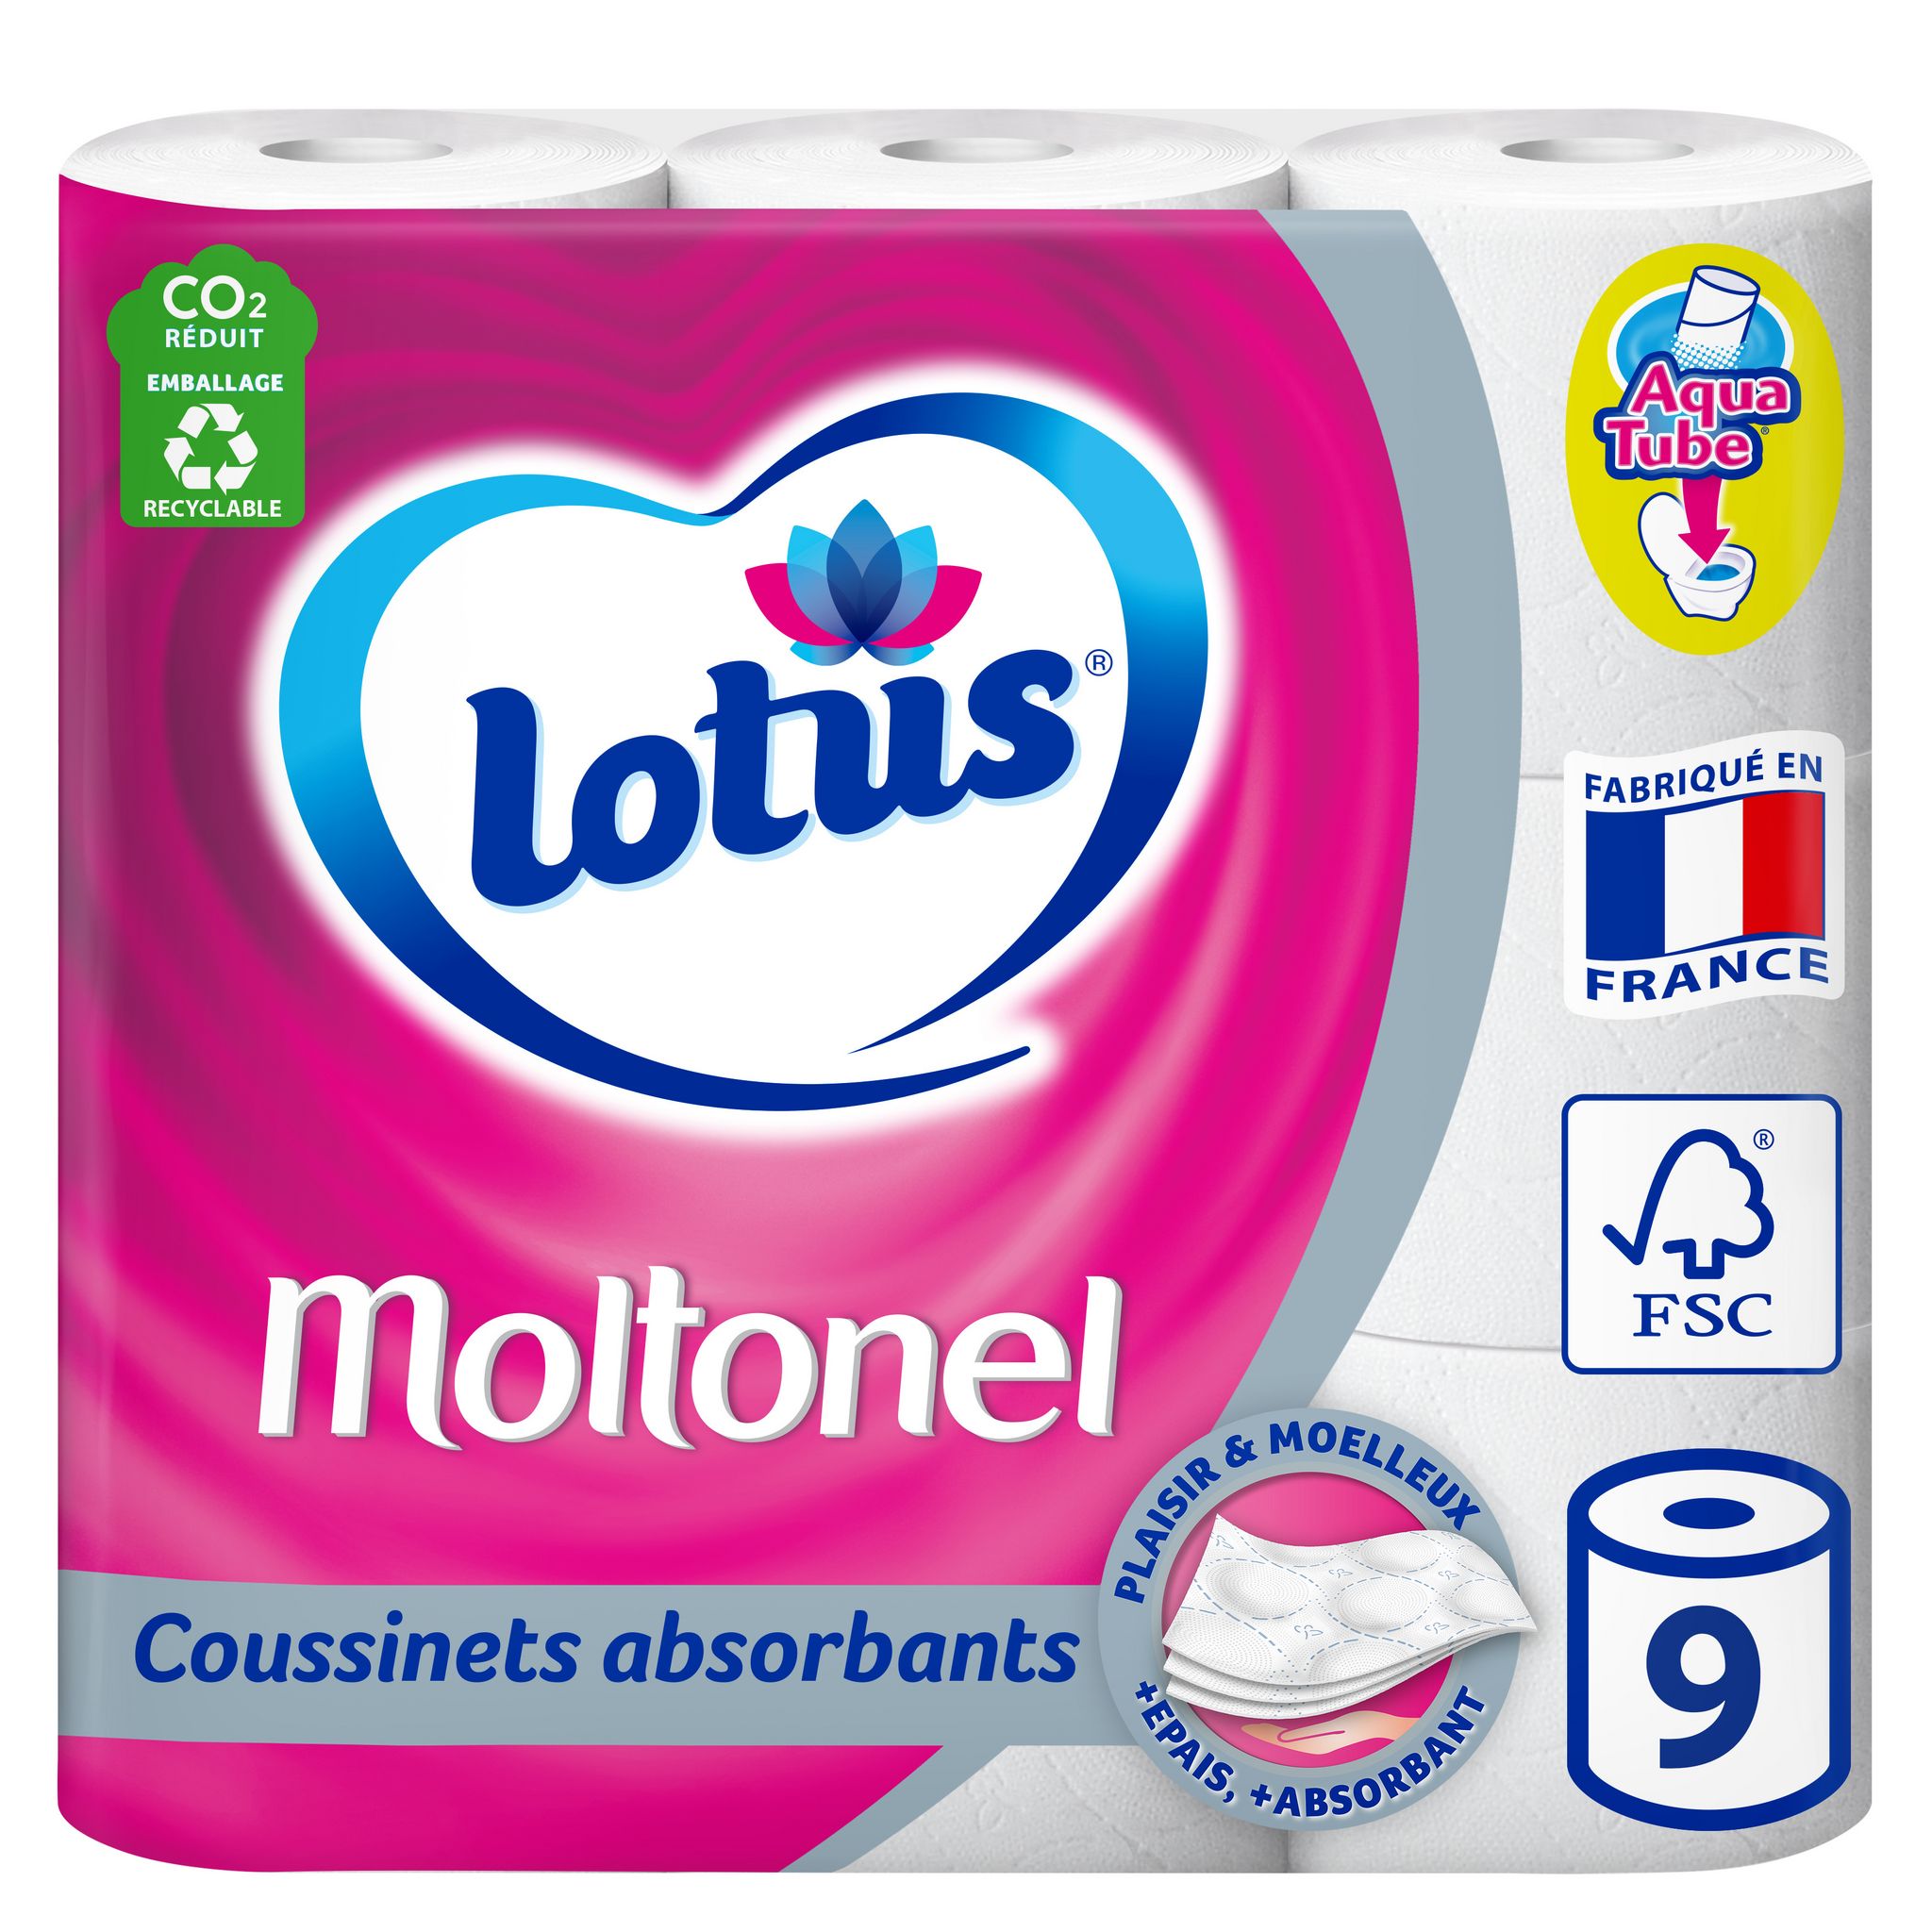 Papier toilette Moltonel aqua tube LOTUS : le paquet de 6 rouleaux